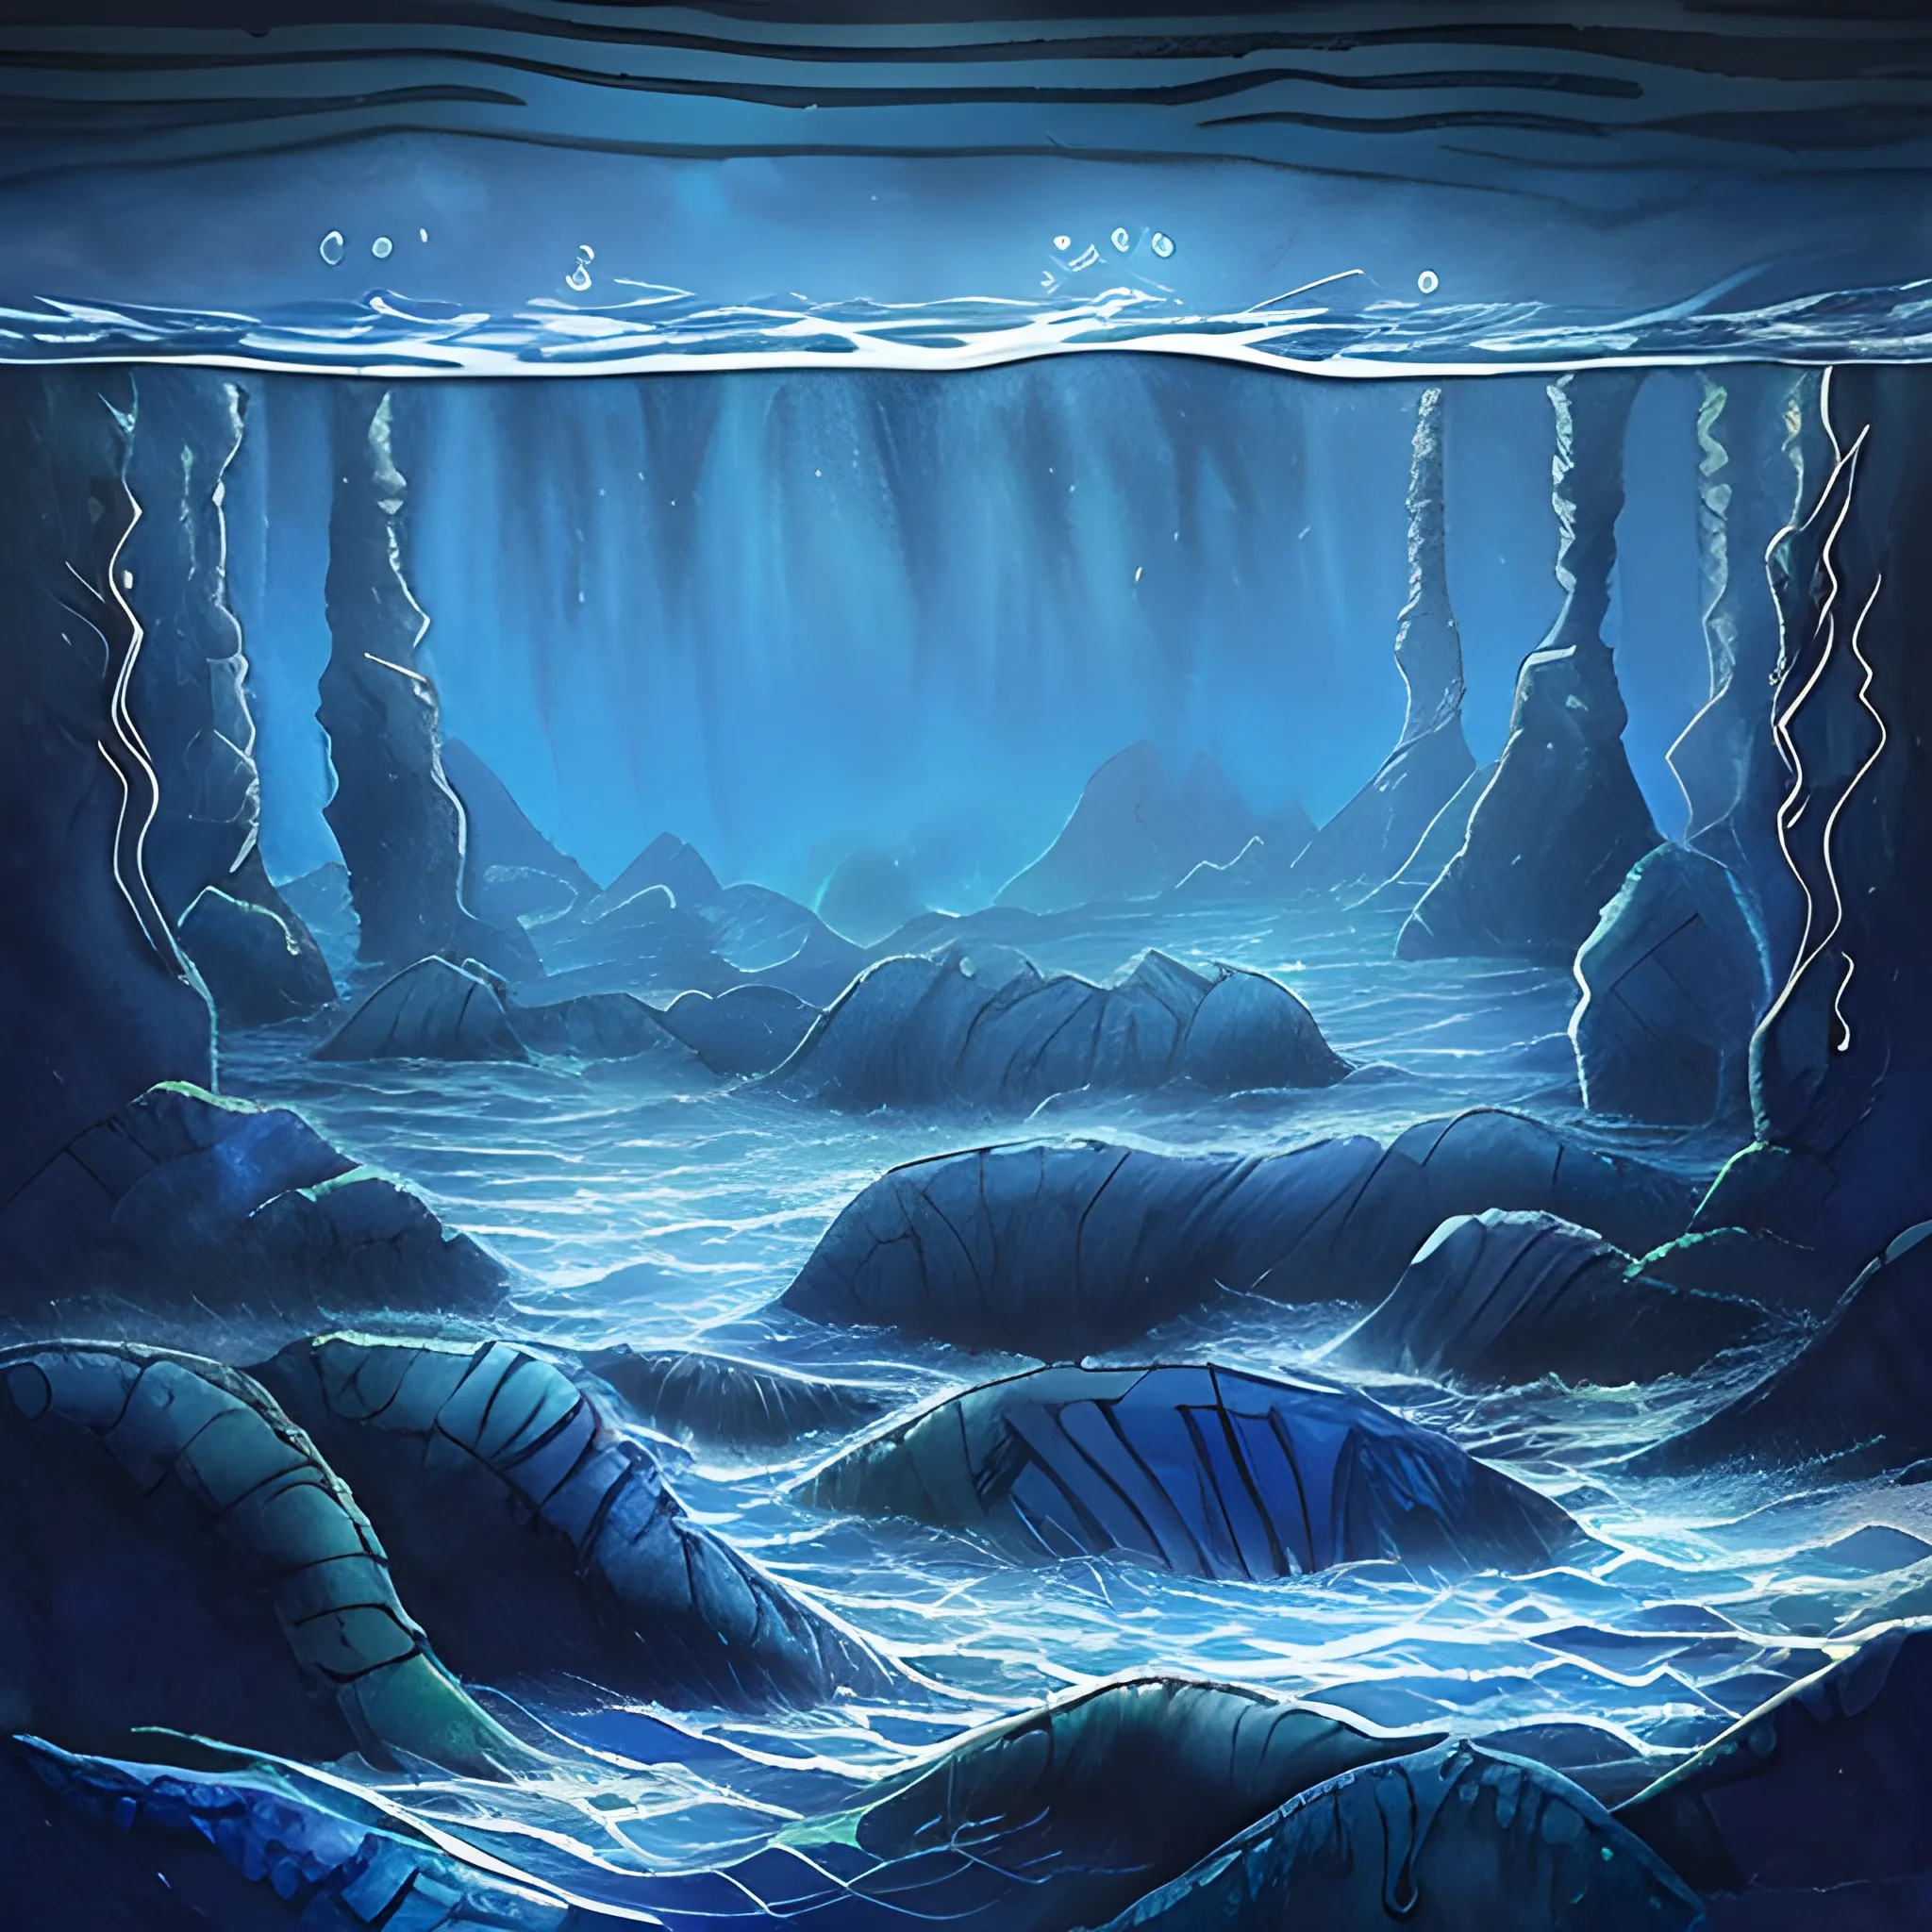 , Trippy, Water Color, abyssal water, dark blue, runic stones,
realistic water background, Atlantide, dark Blue beams, dark water